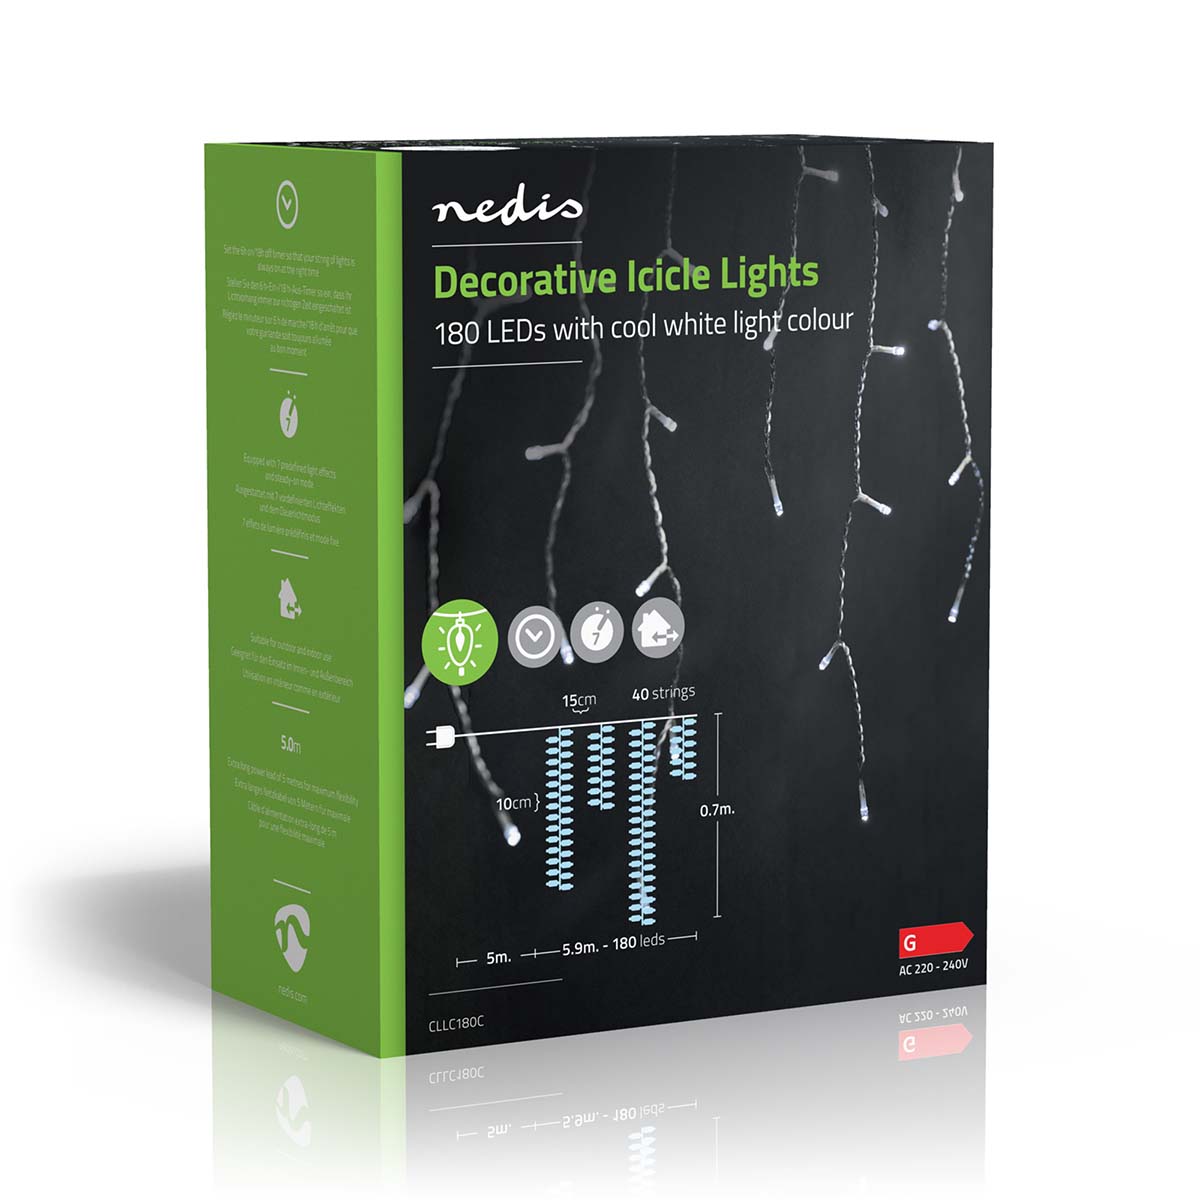 LED-Lichterkette Eiszapfen 180 LEDs 5,9m jetzt kaufen - Aktionskönig